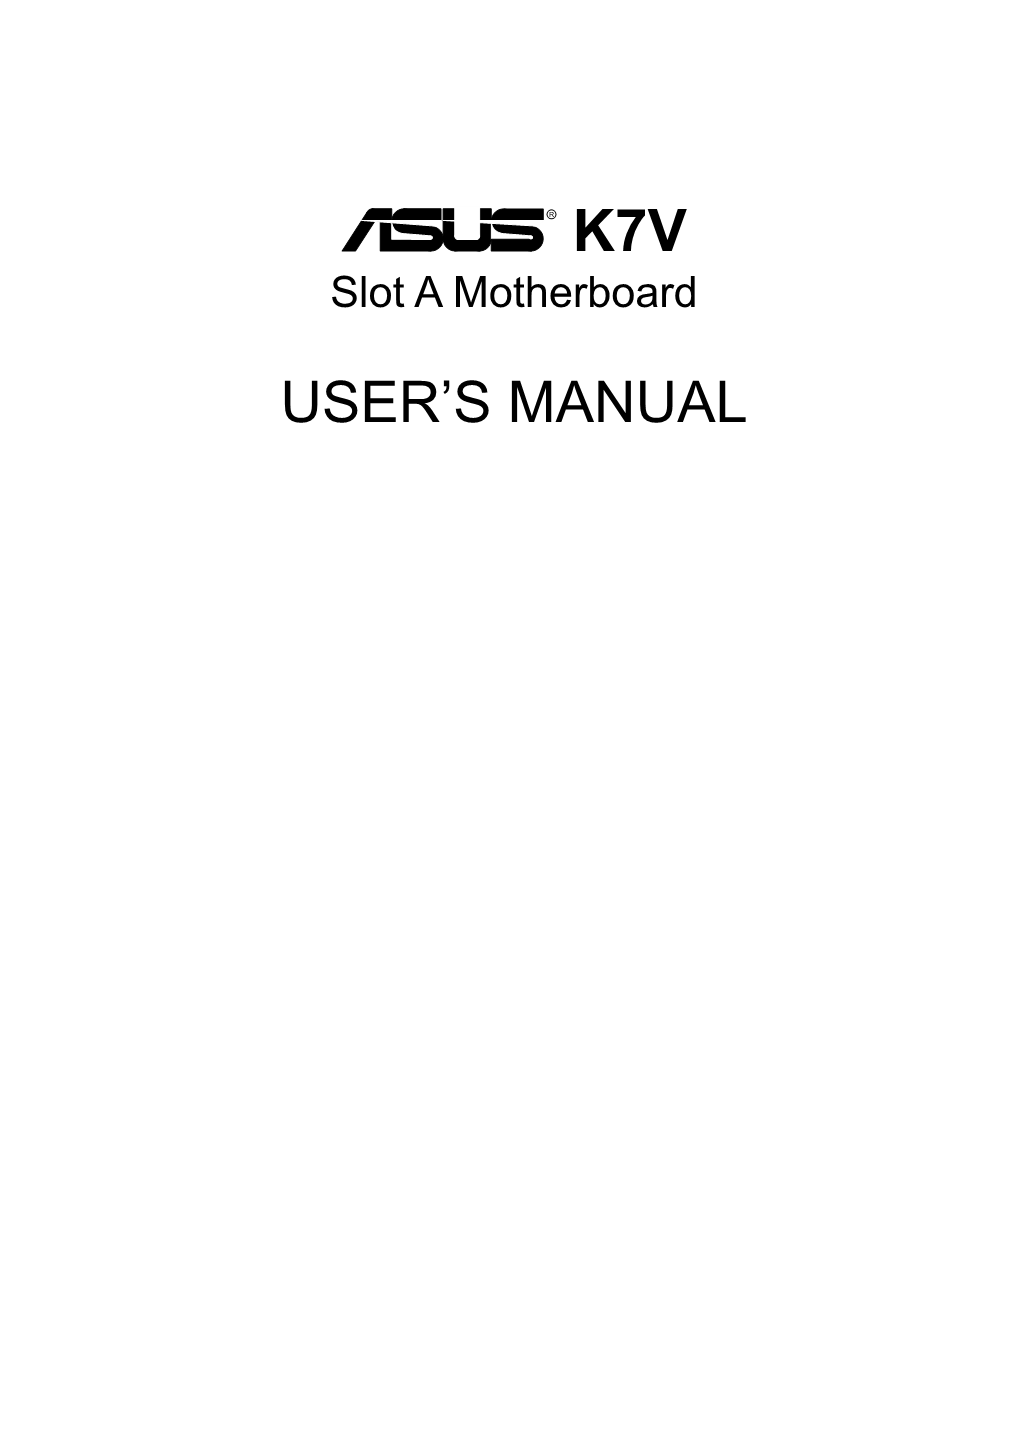 ASUS K7V Slot a Motherboard User's Manual